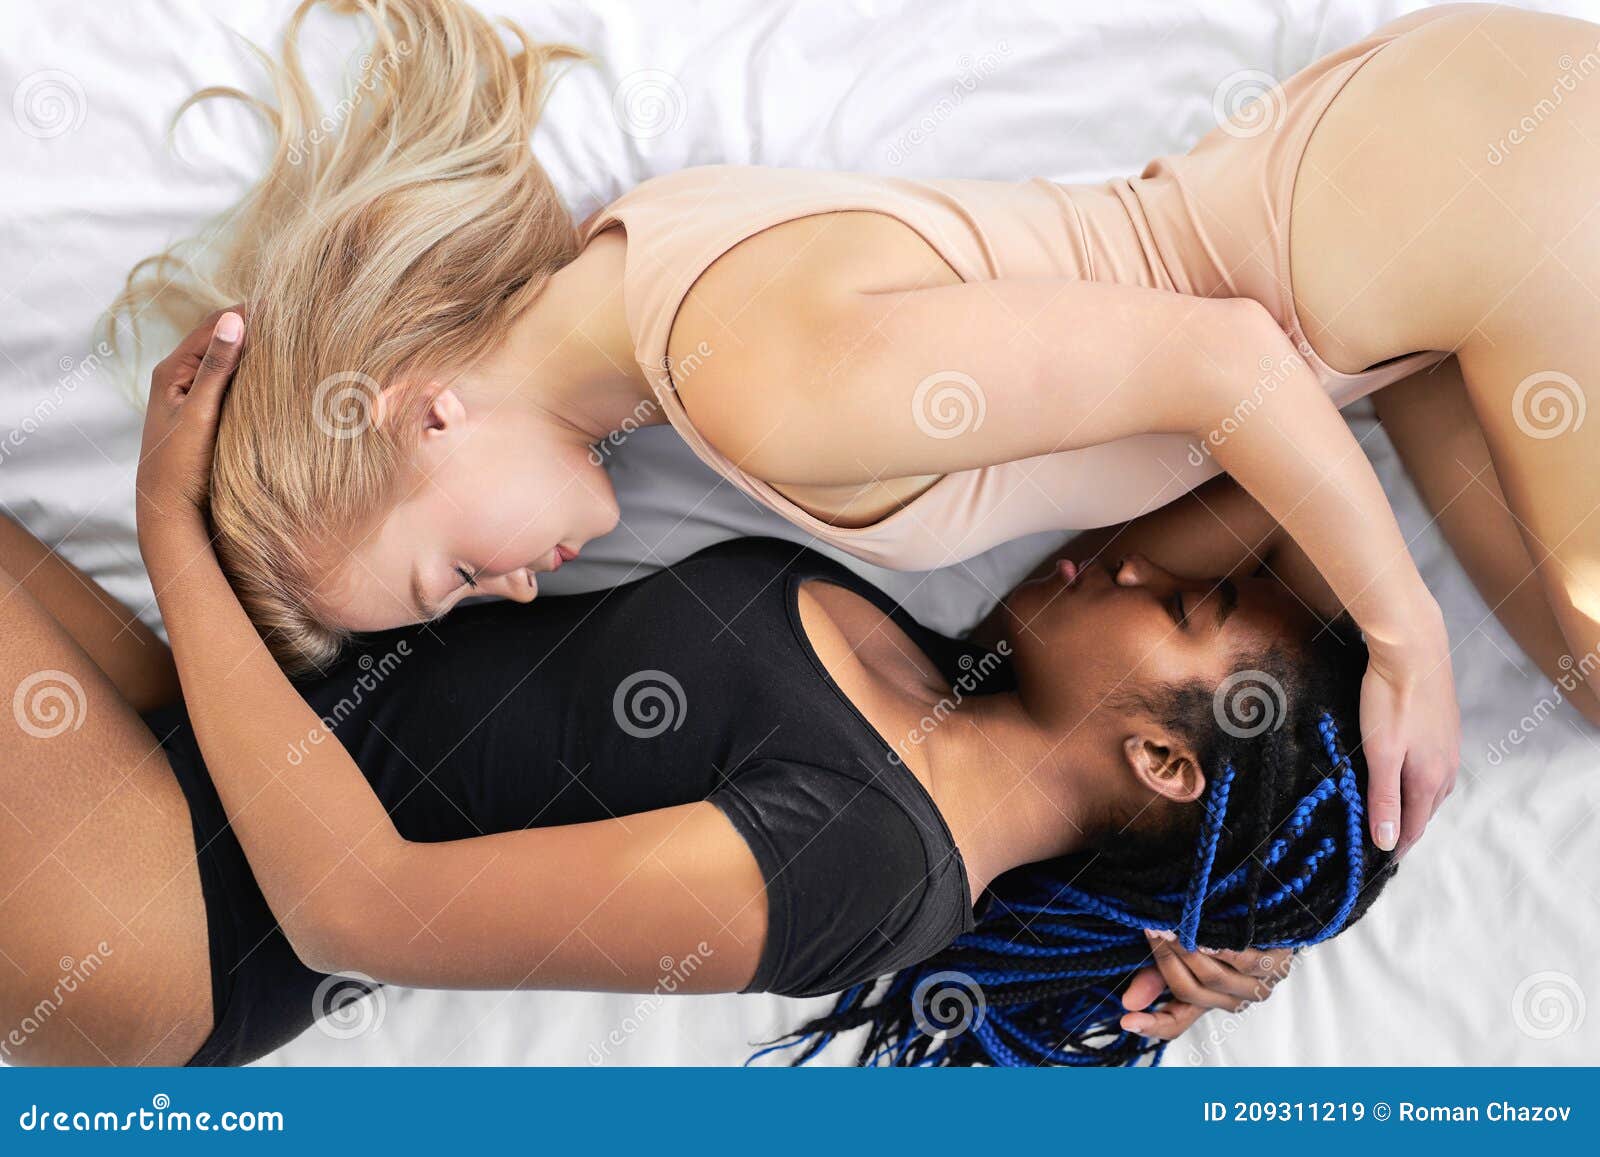 dennis grammenos share hot lesbians in underwear photos